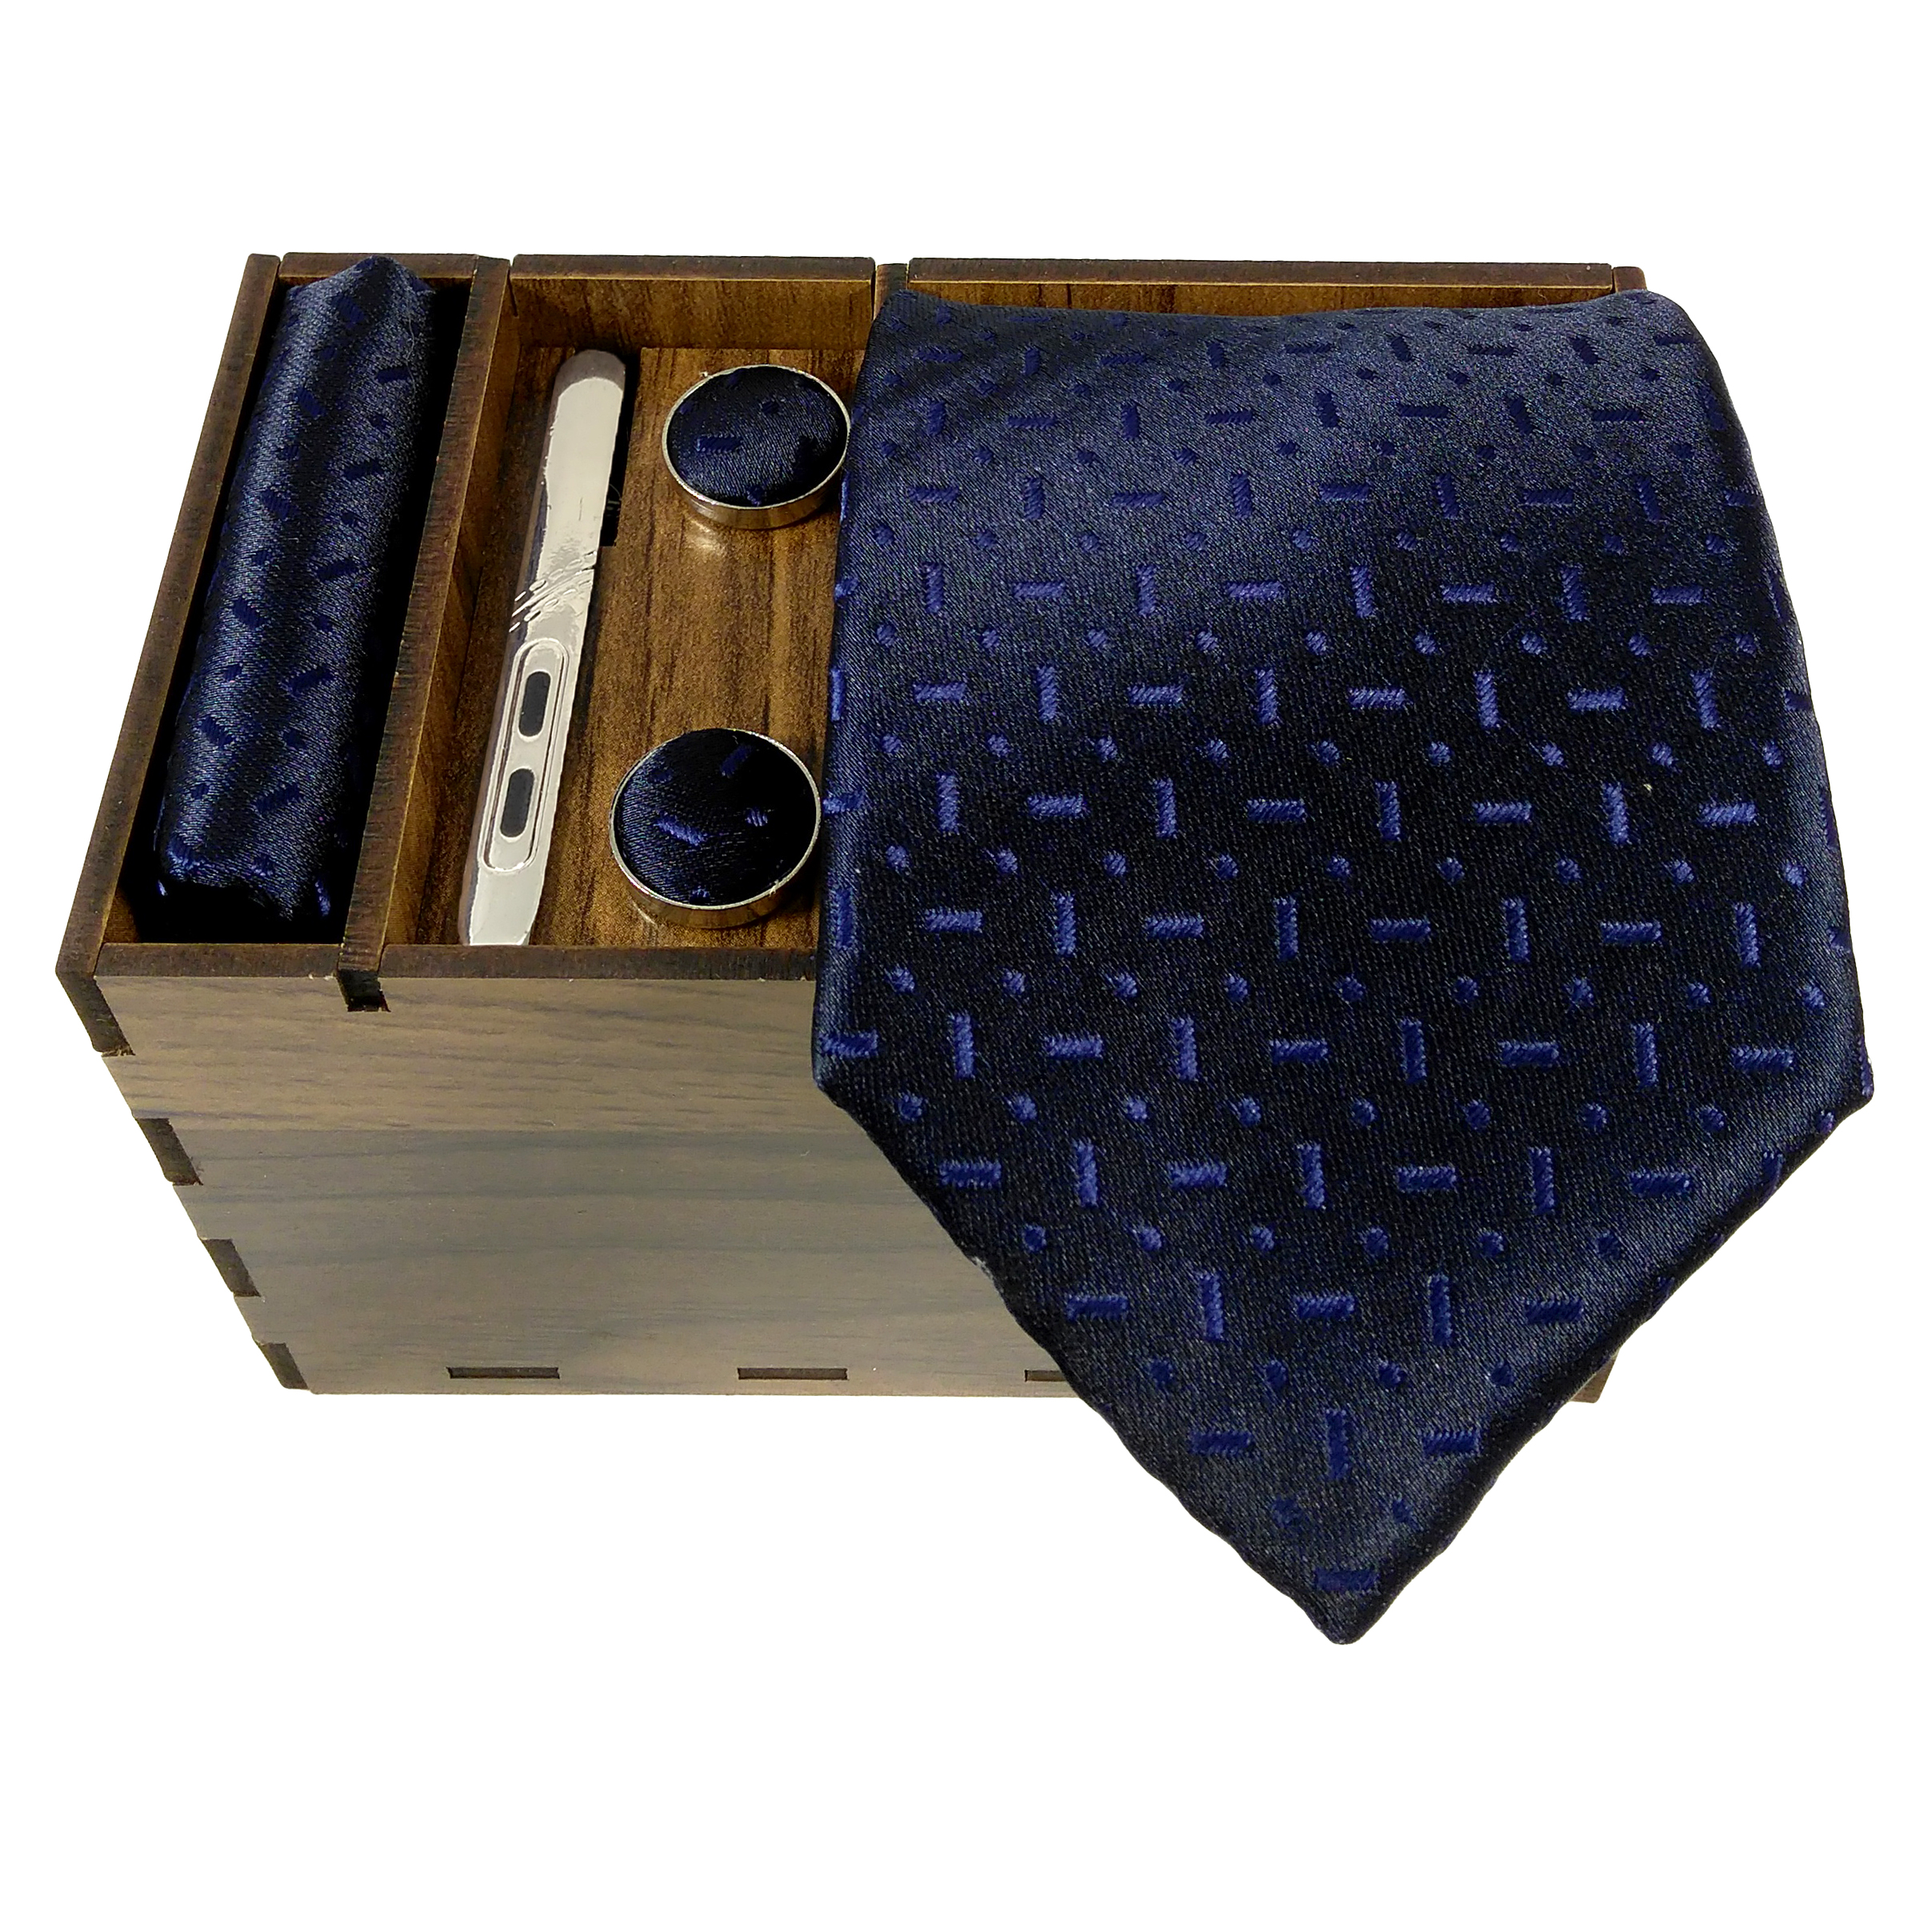 ست کراوات و دستمال جیب و دکمه سردست و گیره کراوات مردانه مدل 471